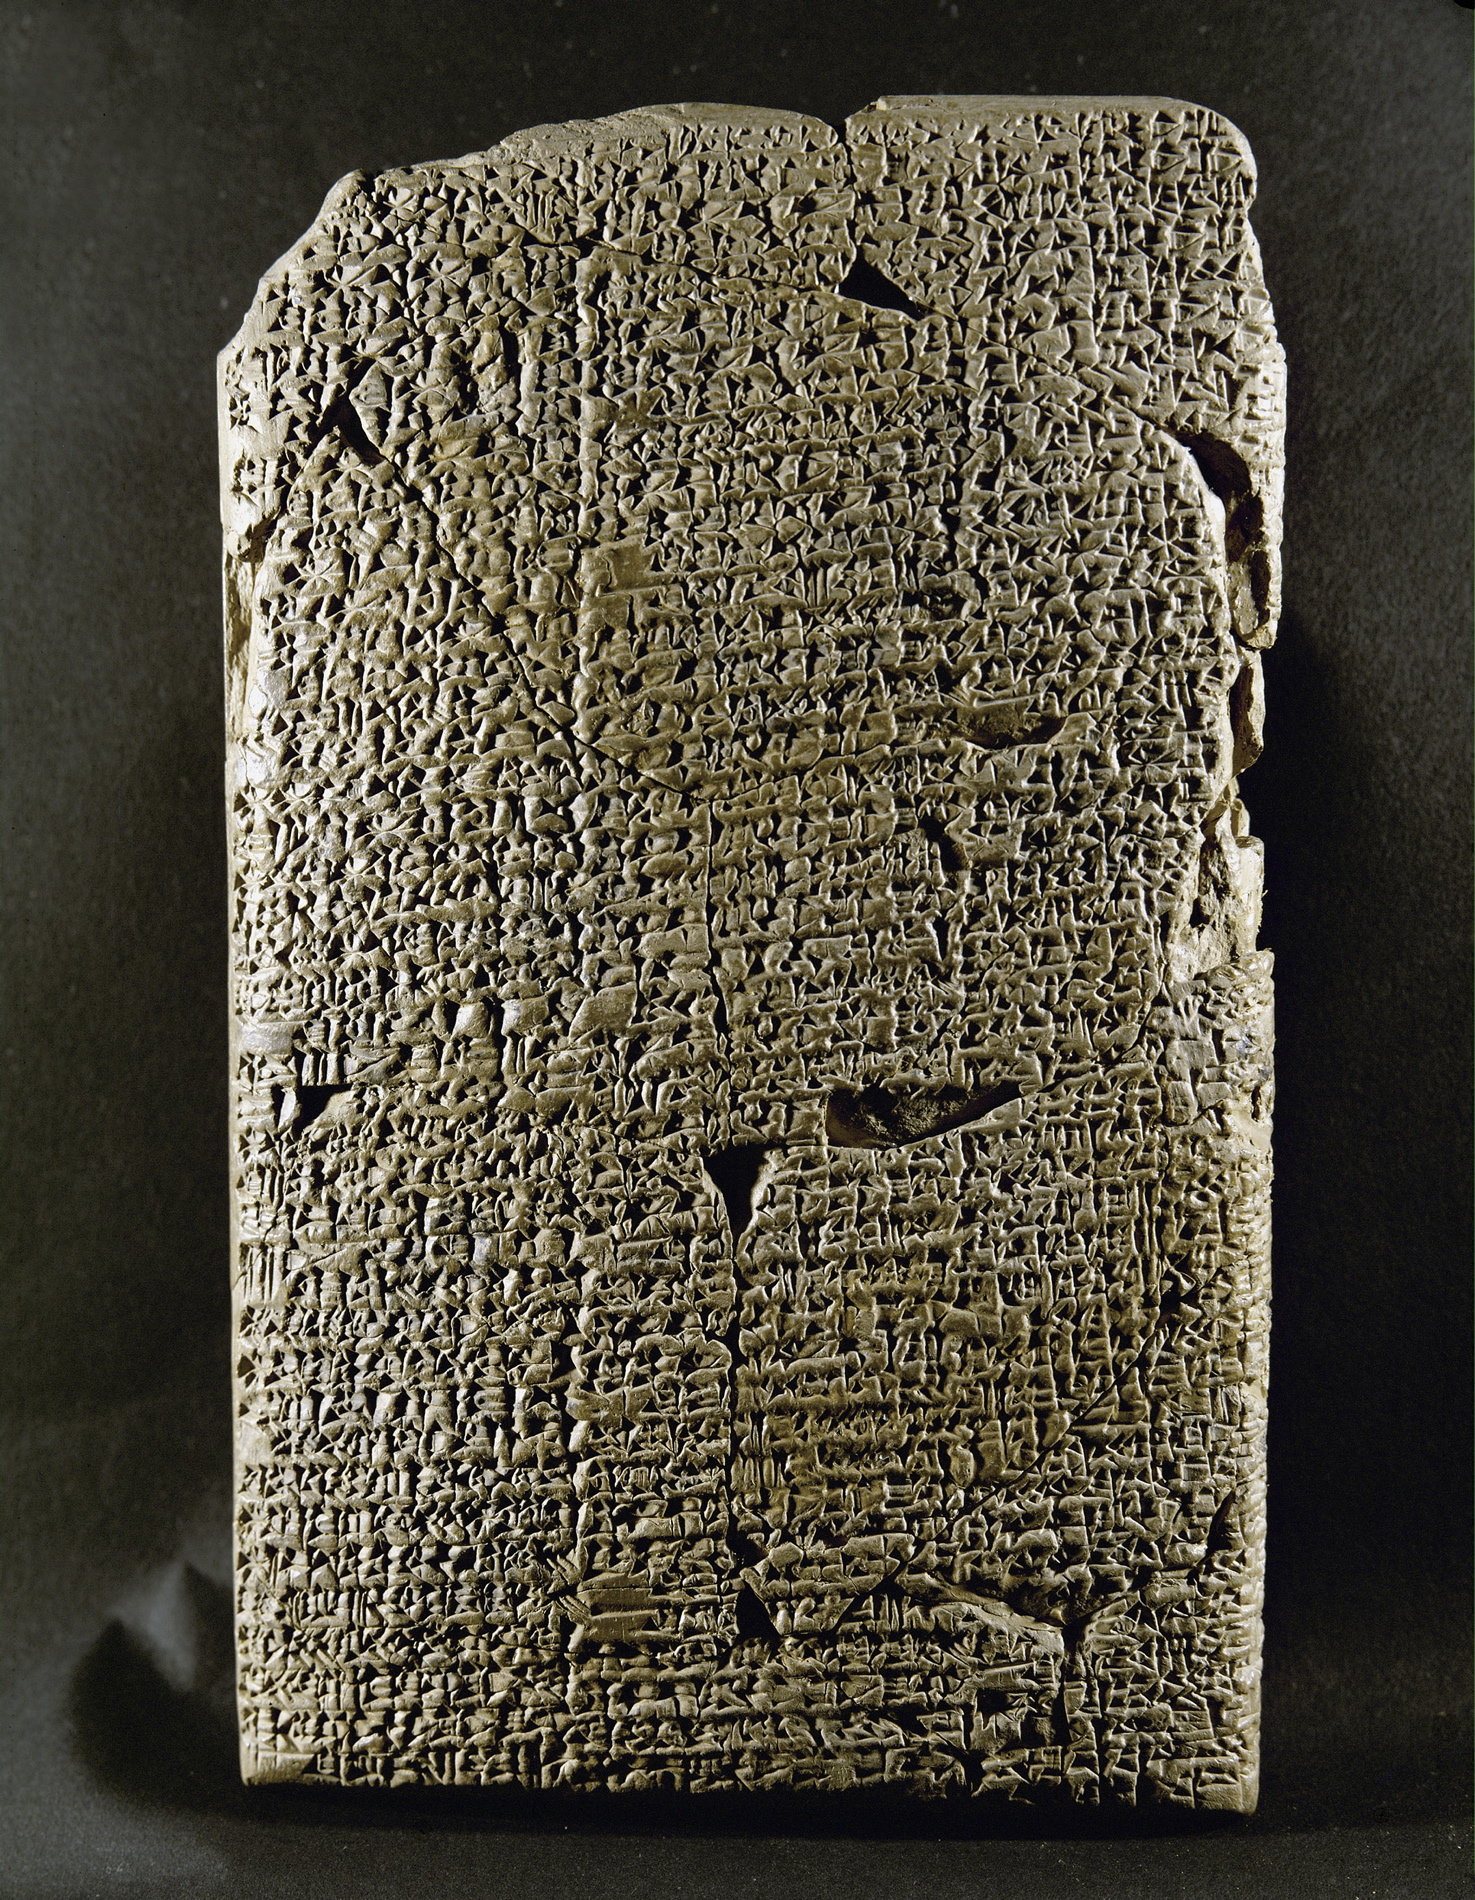 Sumeryjska tabliczka z terakoty (XVIII w p.n.e.), opisująca zaślubiny pomiędzy boginią płodności a królem Iddinem Daganem z dynastii Isin